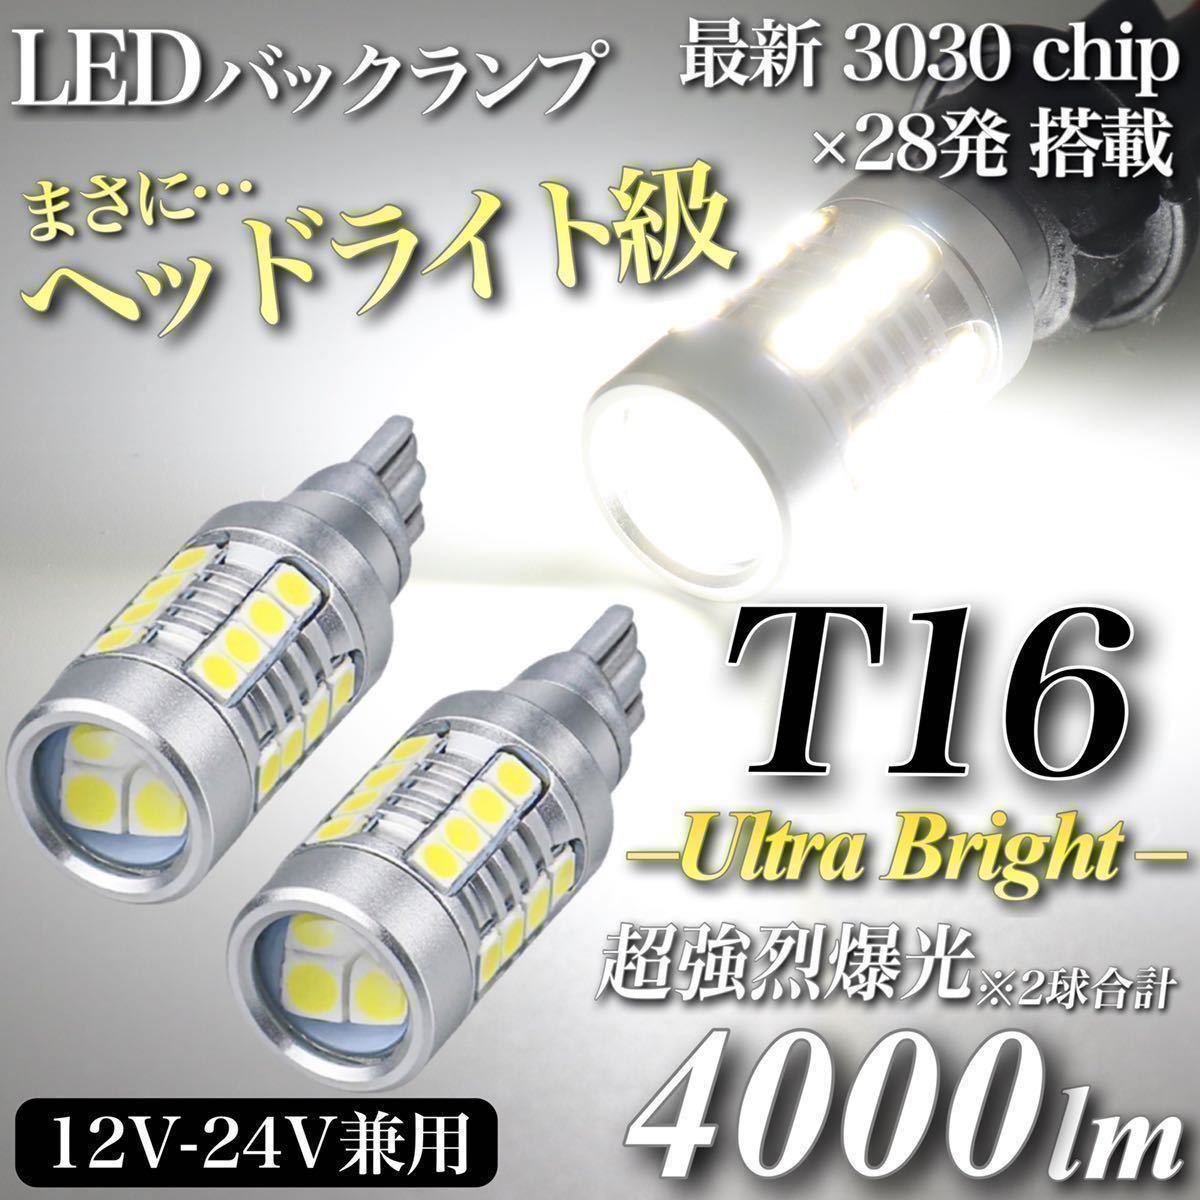 【送料無料】4000lm ヘッドライト級 超爆光 驚異 T16 LED バックランプ キャンセラー内蔵 6500K 純白 New 3030 チップ 28発 無極性 2個入 _画像1